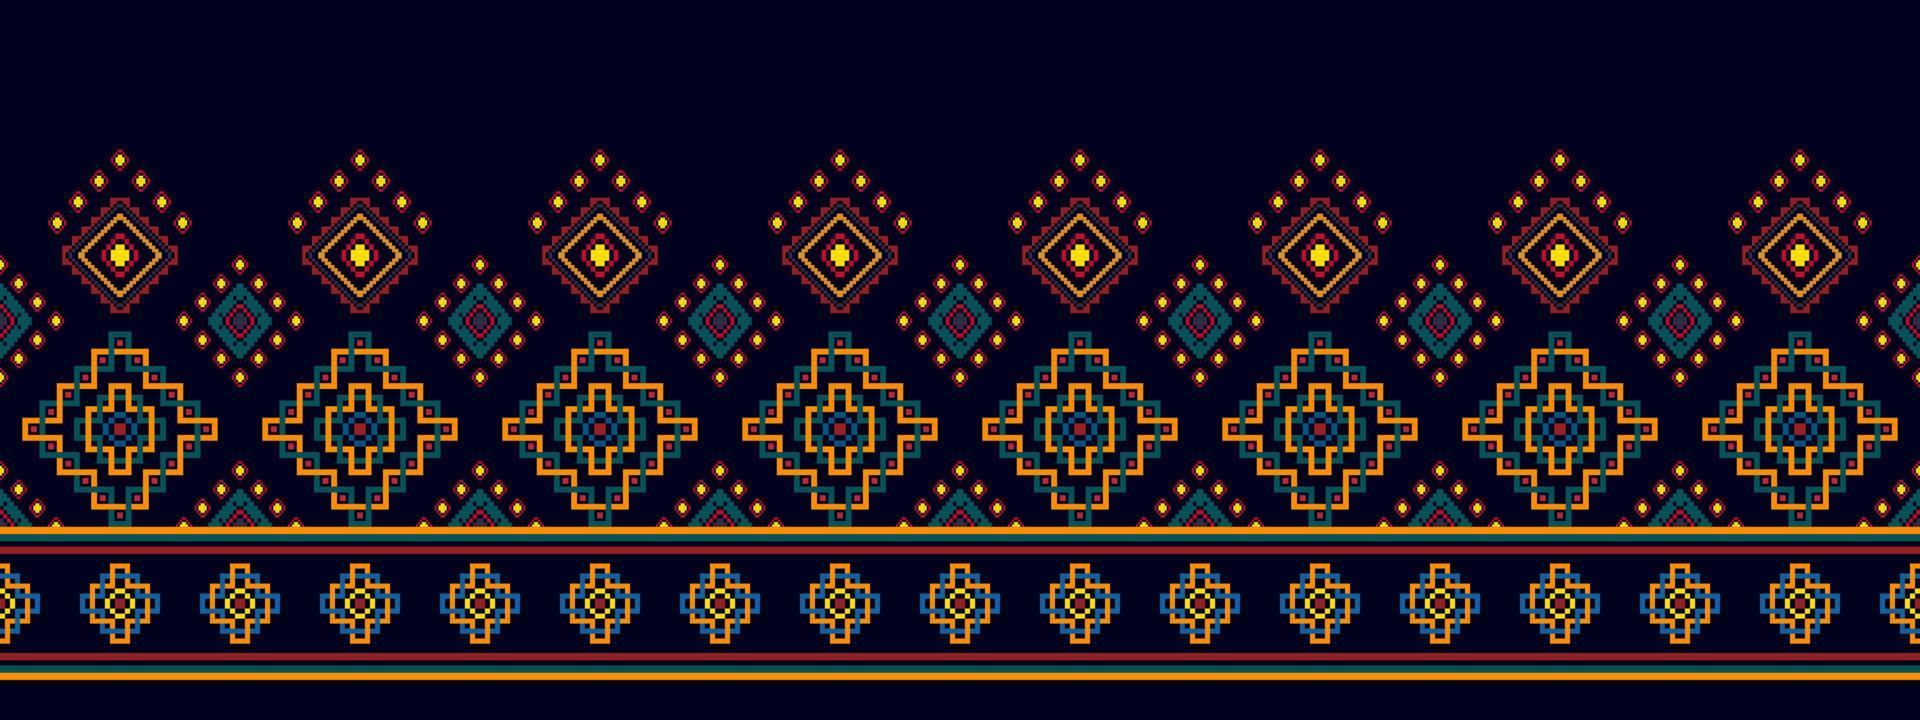 ikat etnisk sömlös mönster dekoration design. aztec tyg matta boho mandalas textil- dekor tapet. stam- inföding motiv blomma dekorativ traditionell broderi vektor illustrerade bakgrund